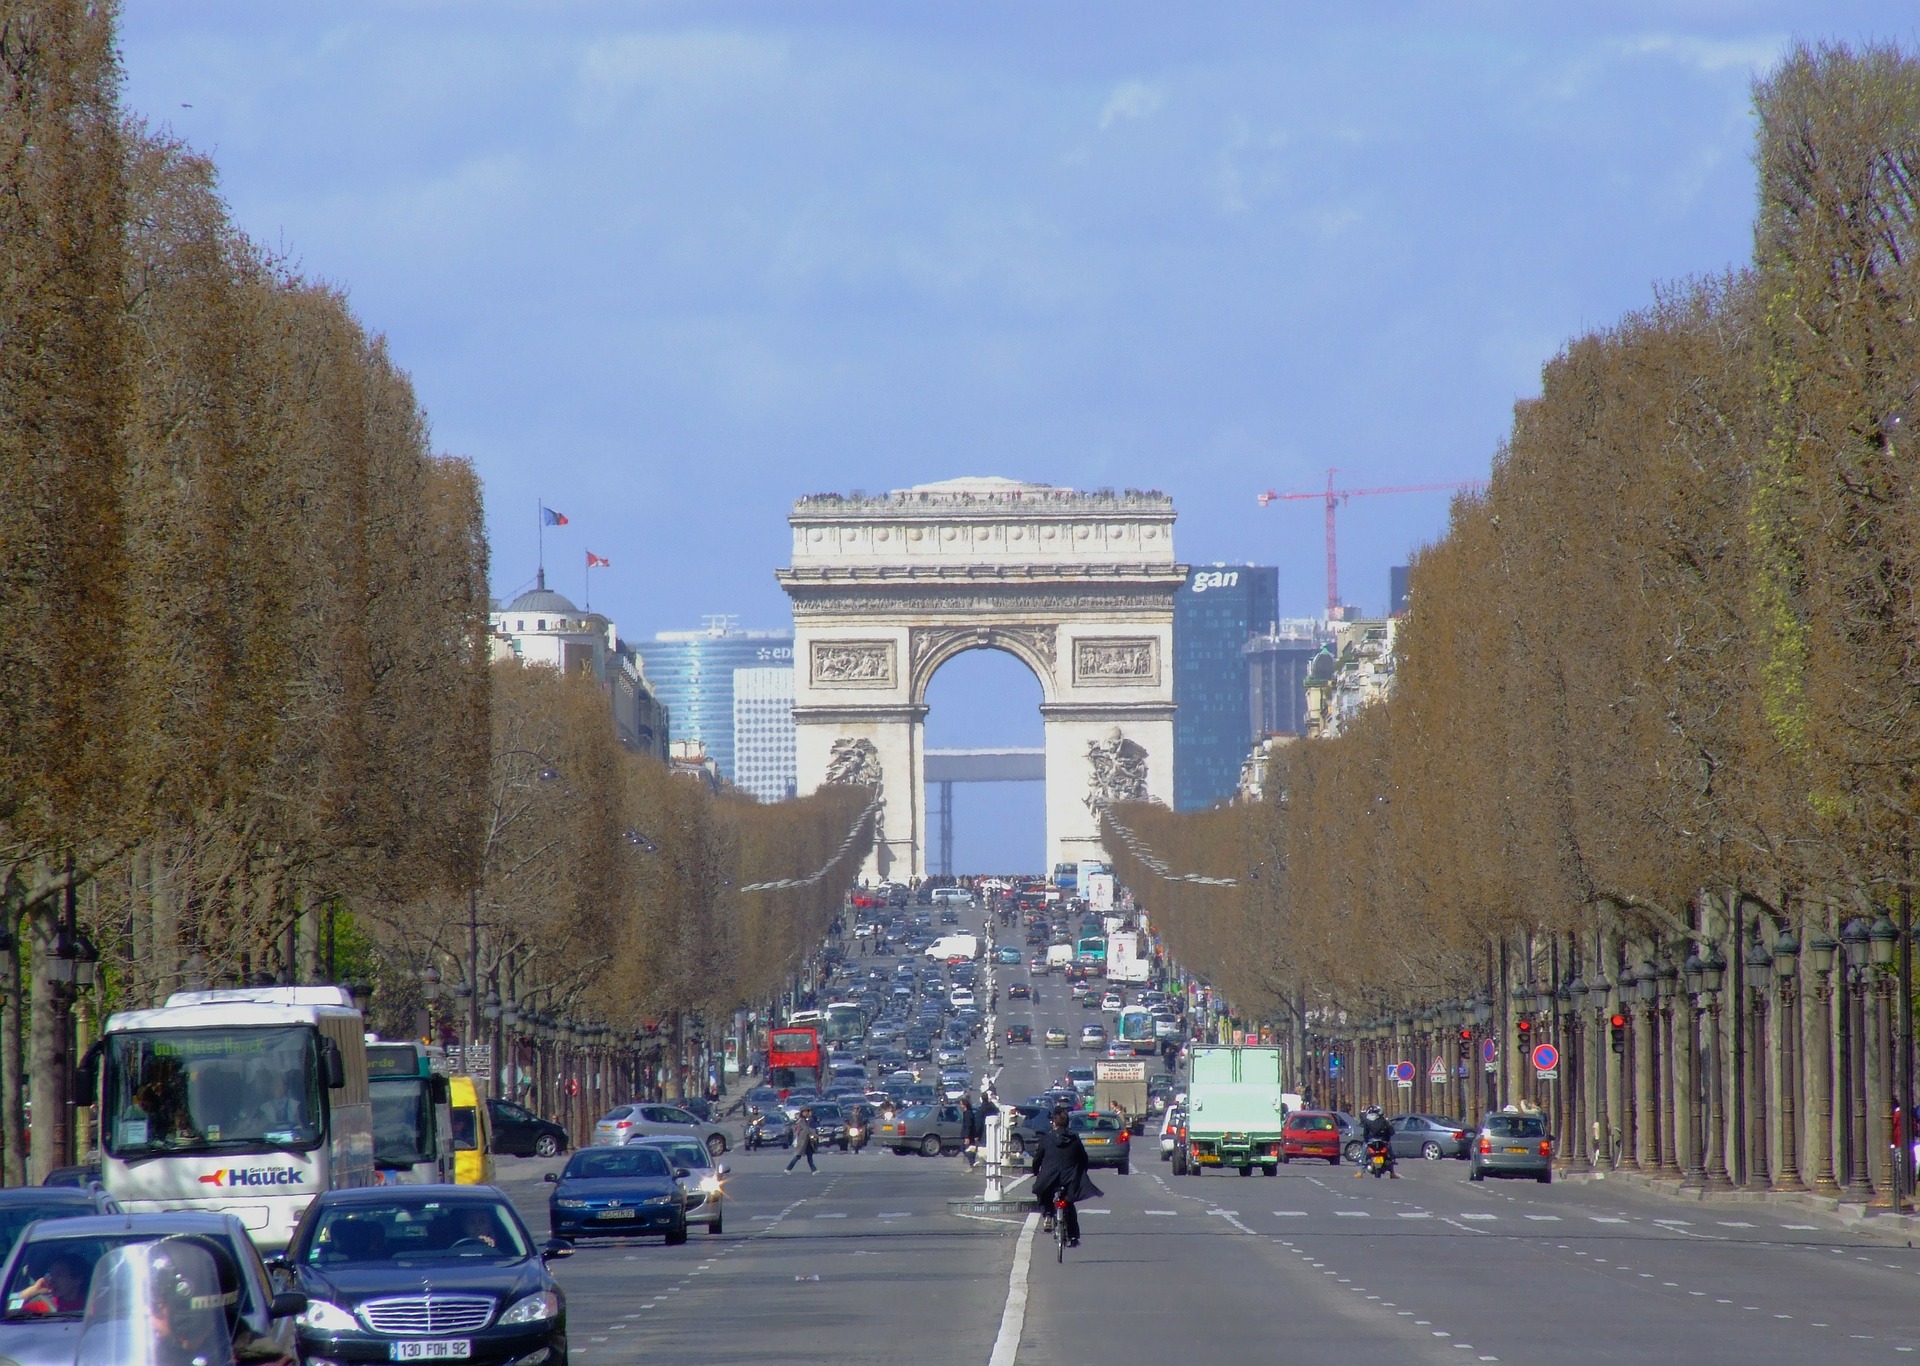 A picture of the Arc de Triomphe, Paris, France